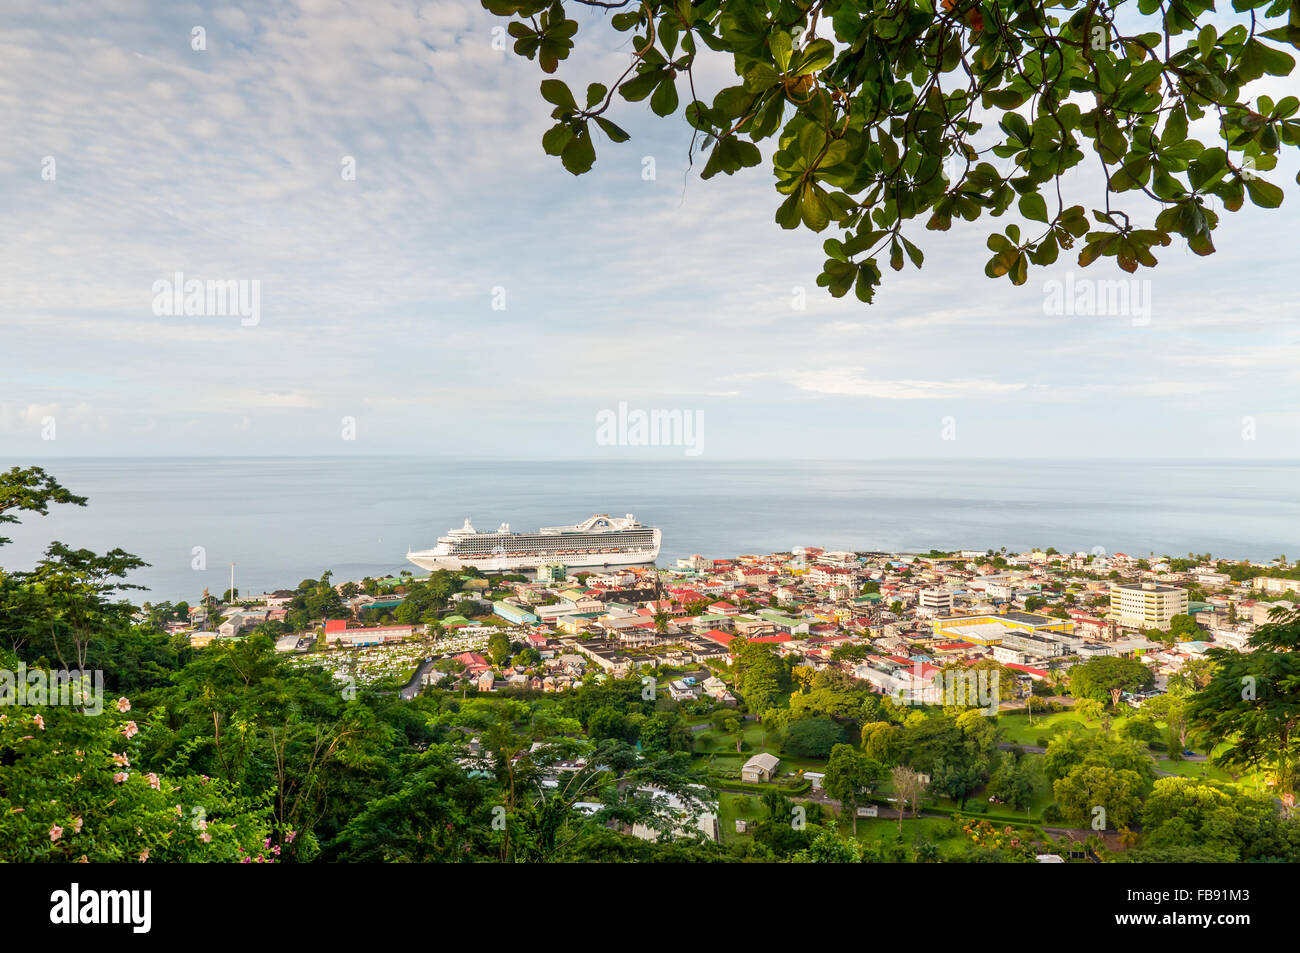 Une vue générale de Roseau, capitale de la Dominique, prises à partir d'une colline dominant la ville. Banque D'Images